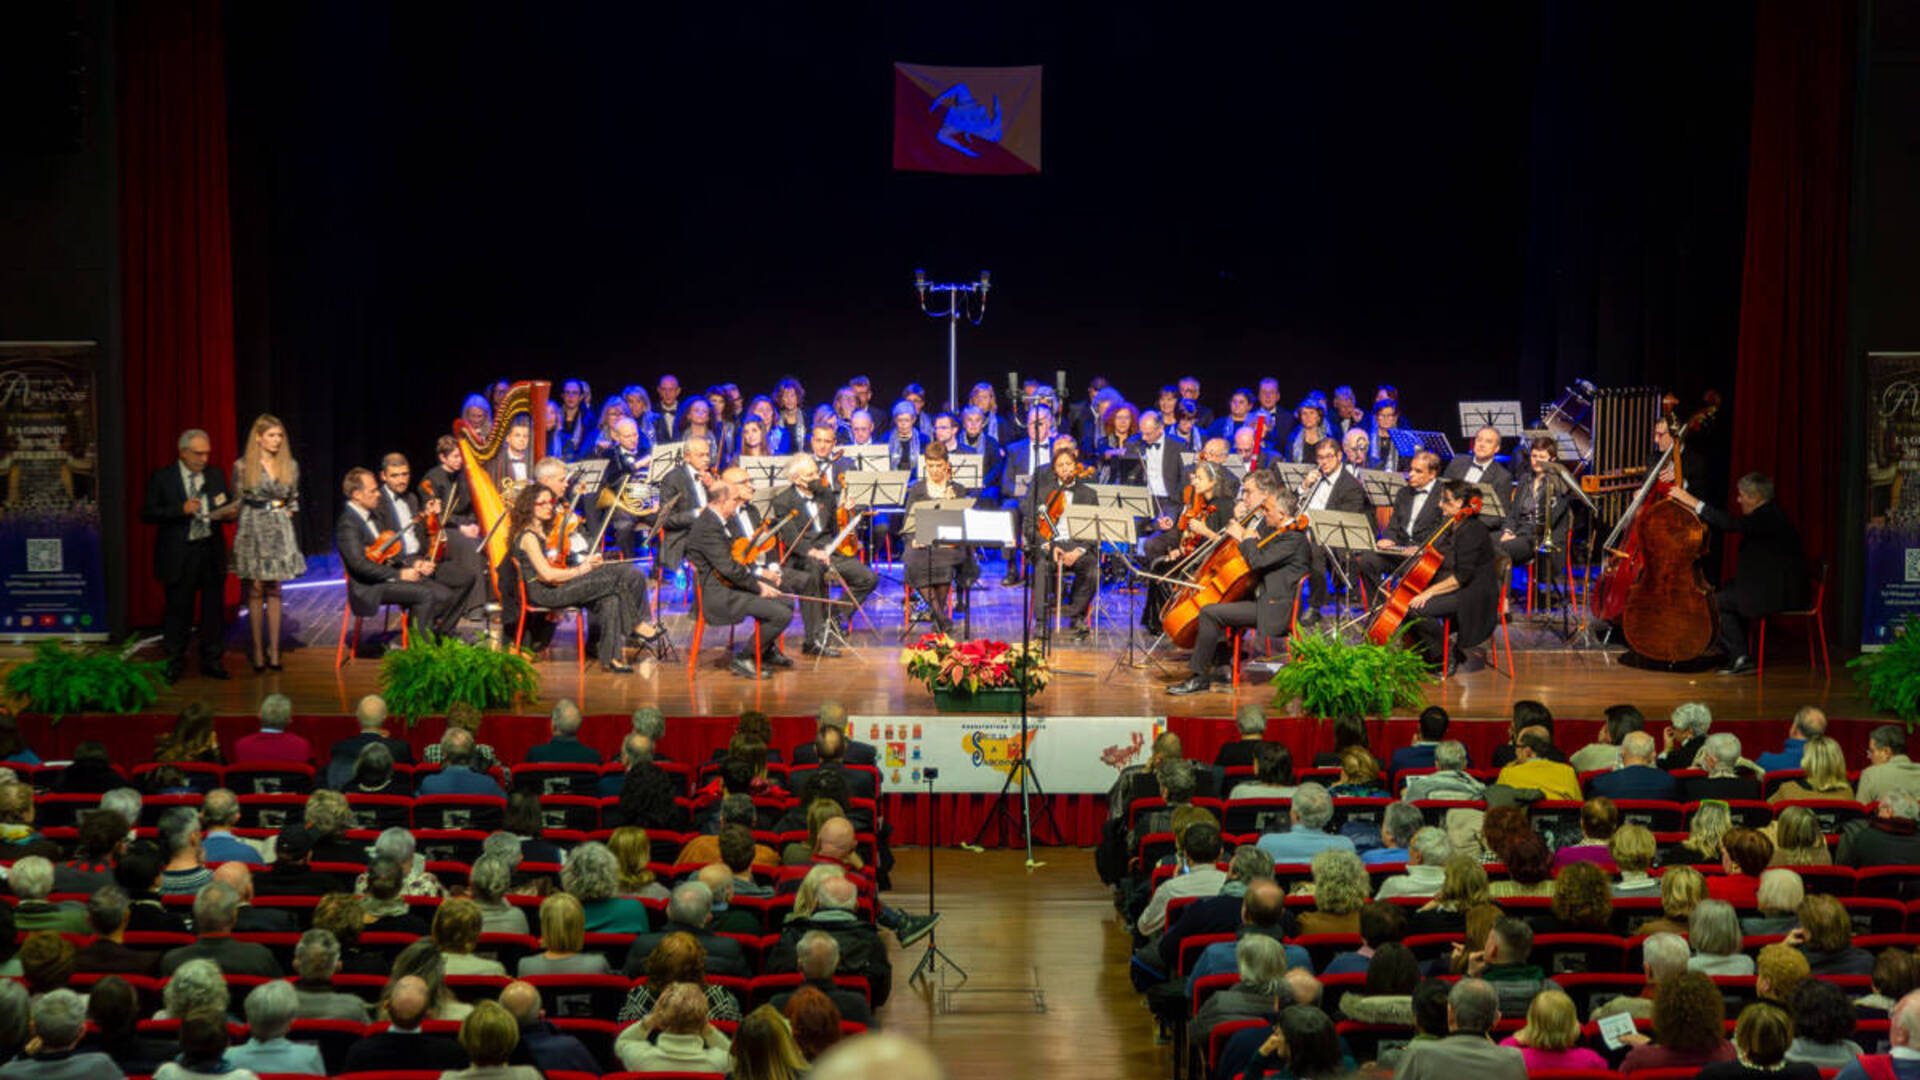 Concerto dell’Epifania: si rinnova l’entusiasmo e l’energia dell’evento di Sicilia a Saronno